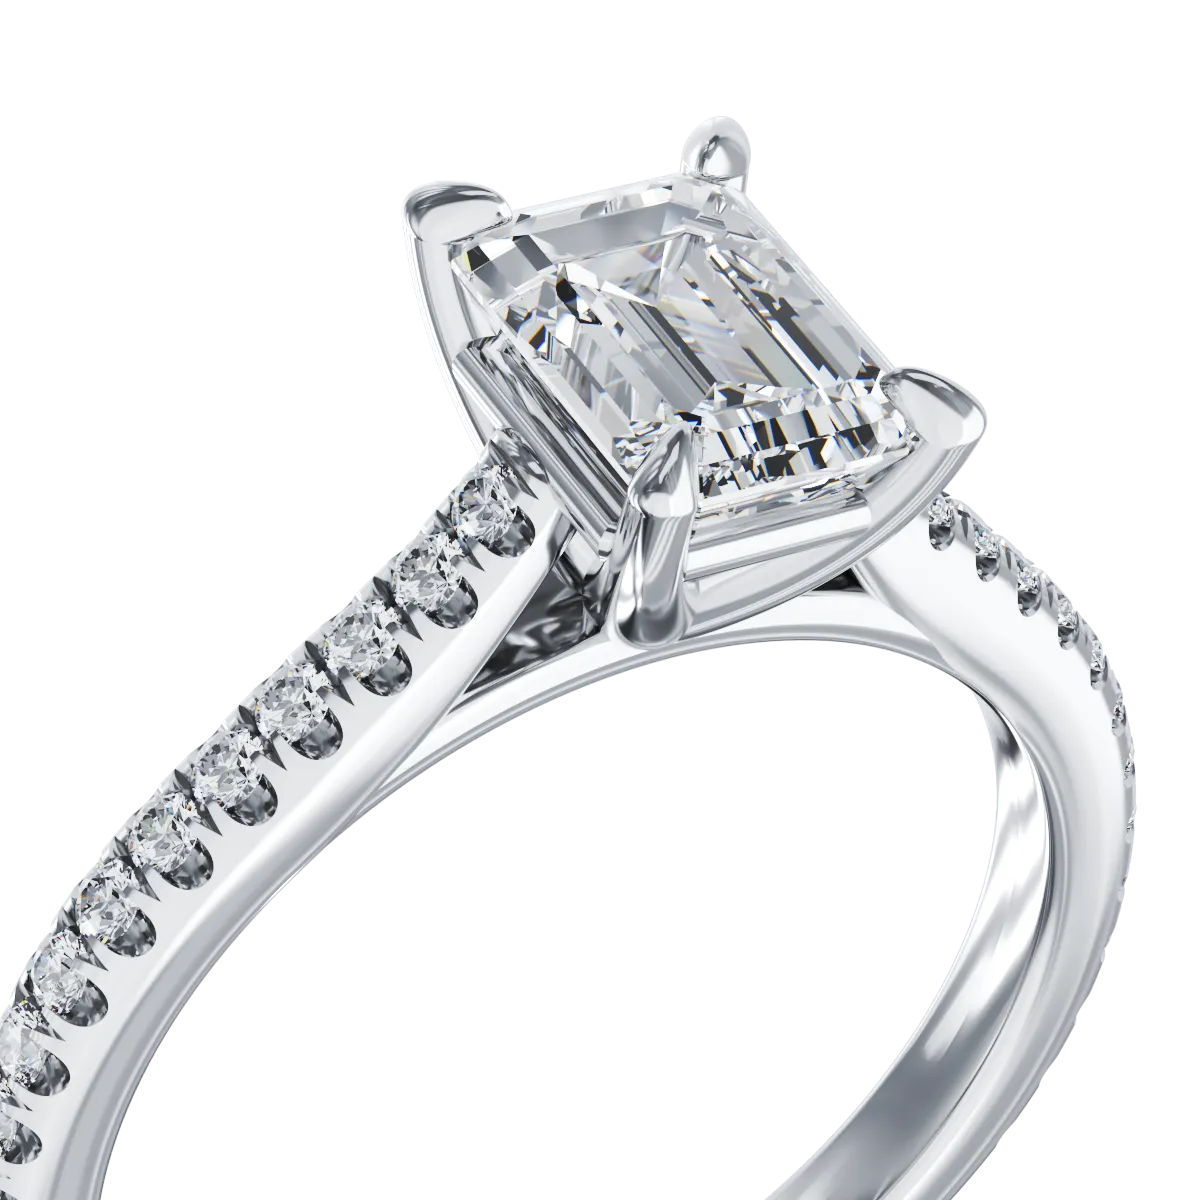 Годежен пръстен от платина с диамант 1гкт u диаманти 0.223гкт